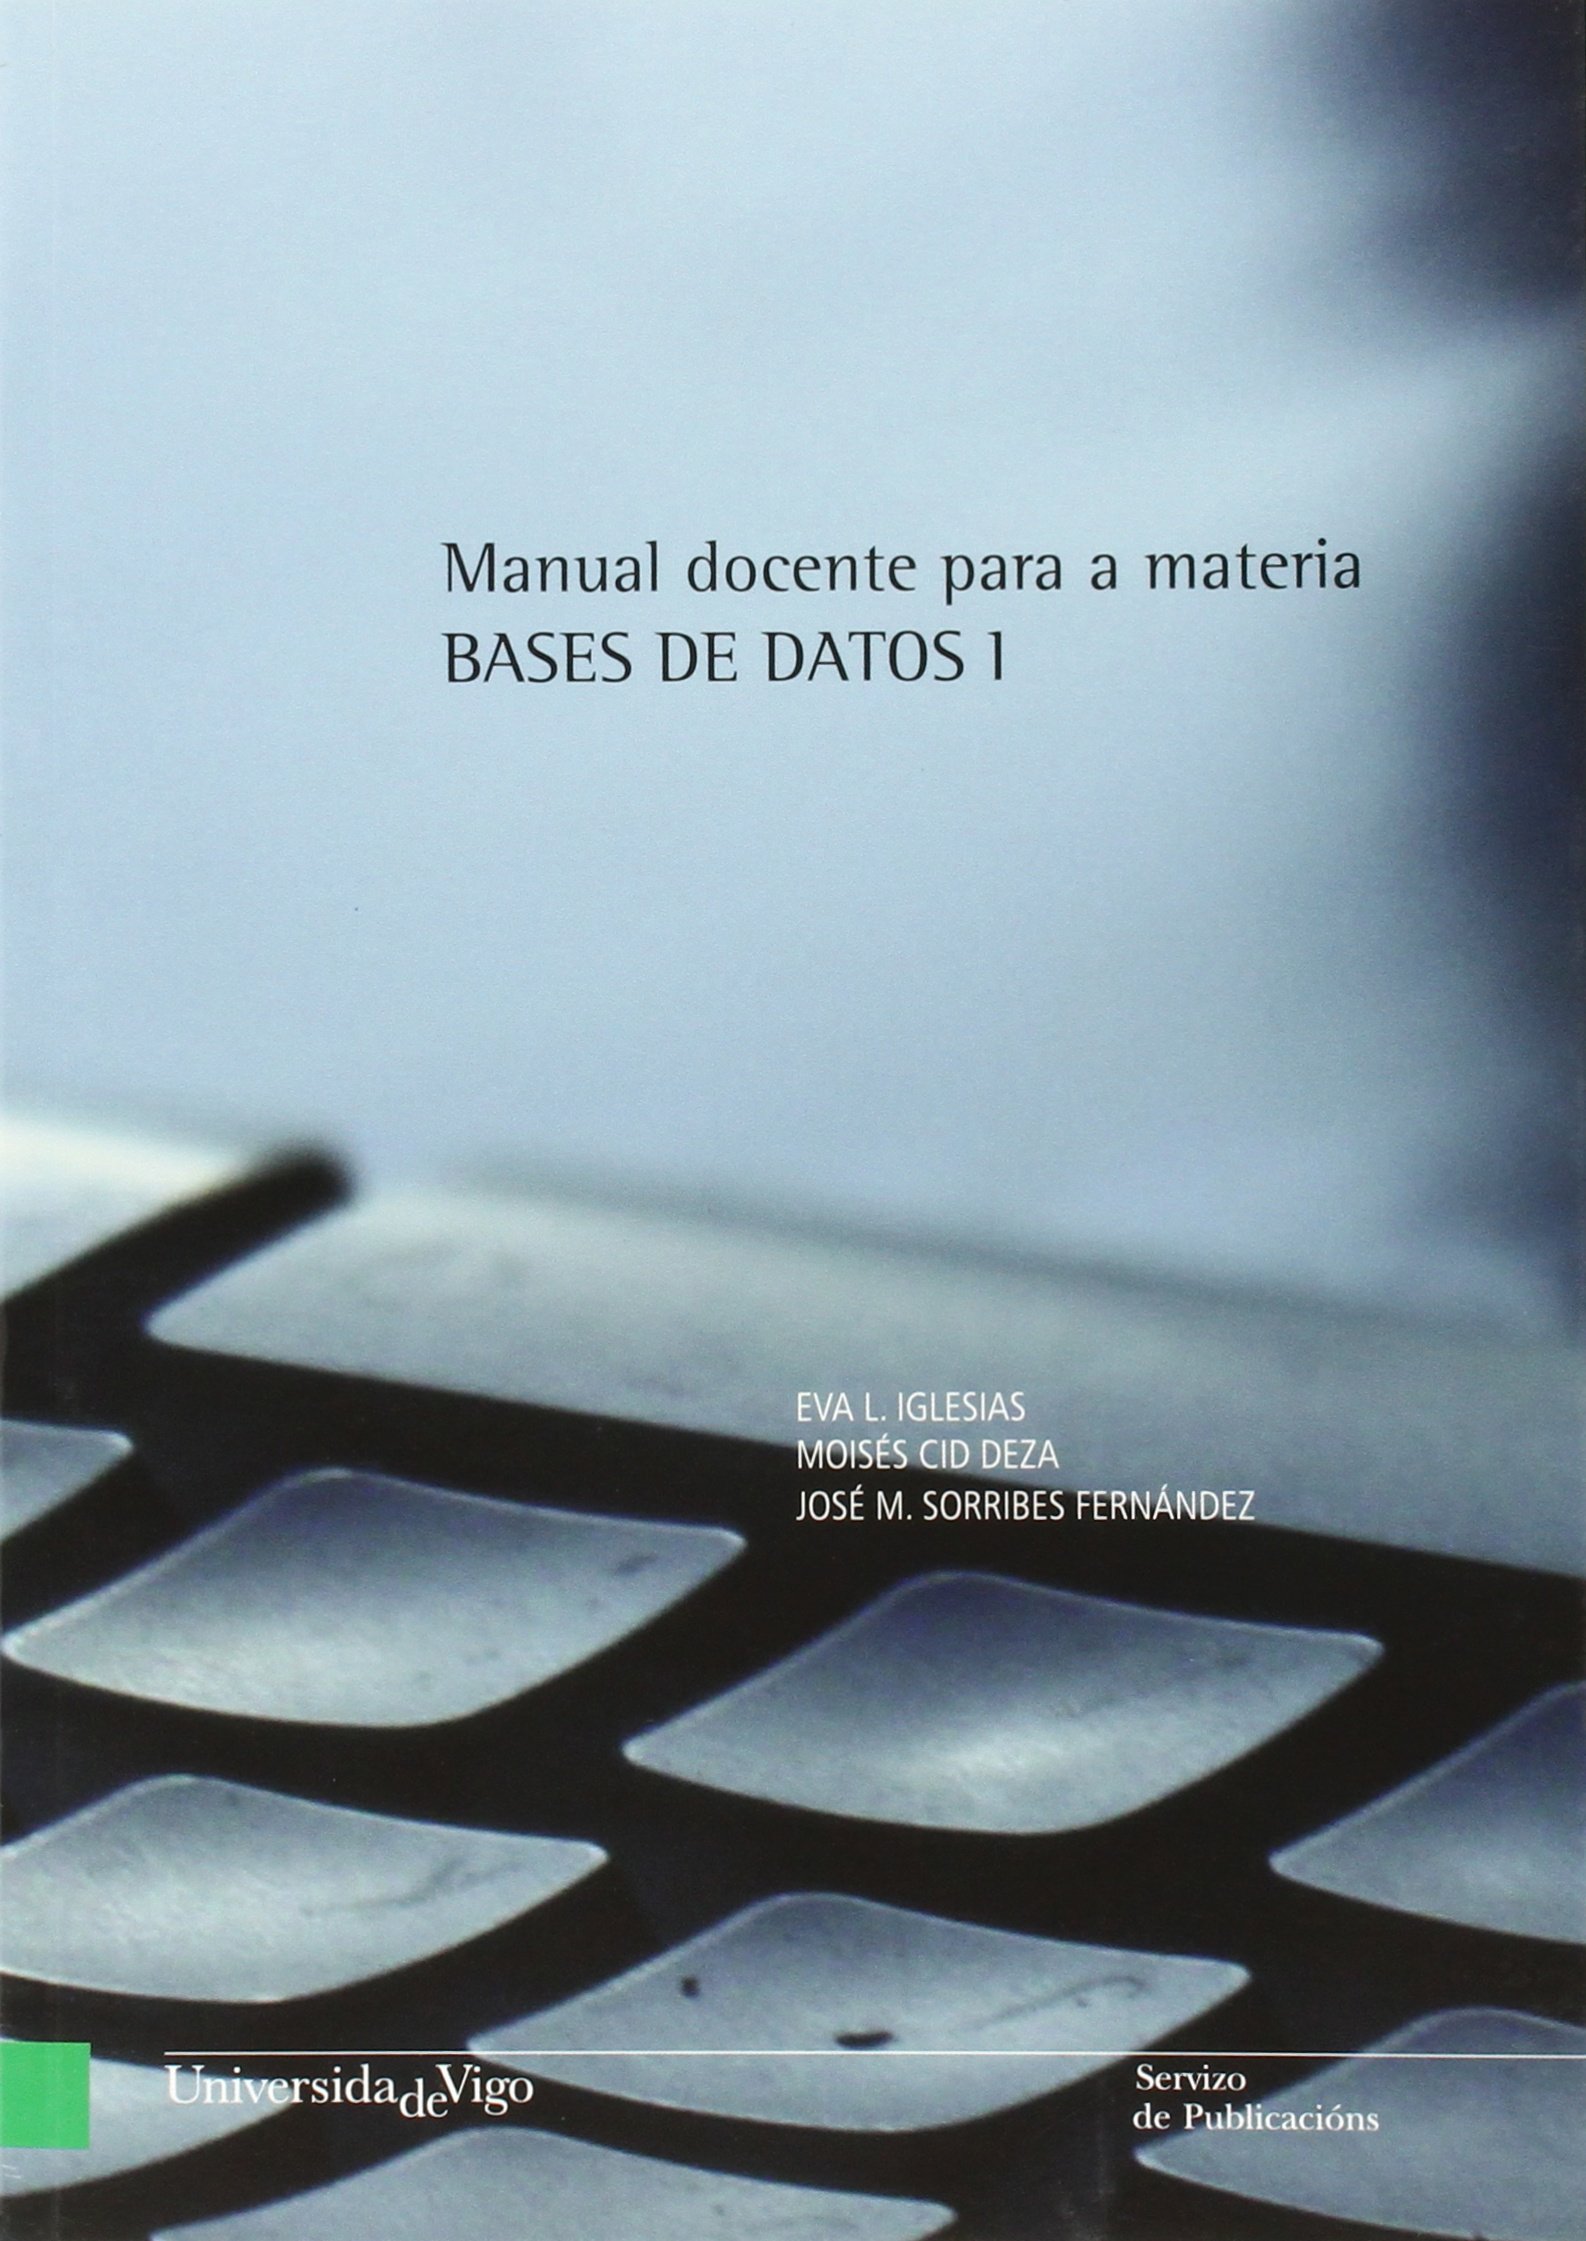 Imagen de portada del libro Manual docente para a materia Bases de datos 1